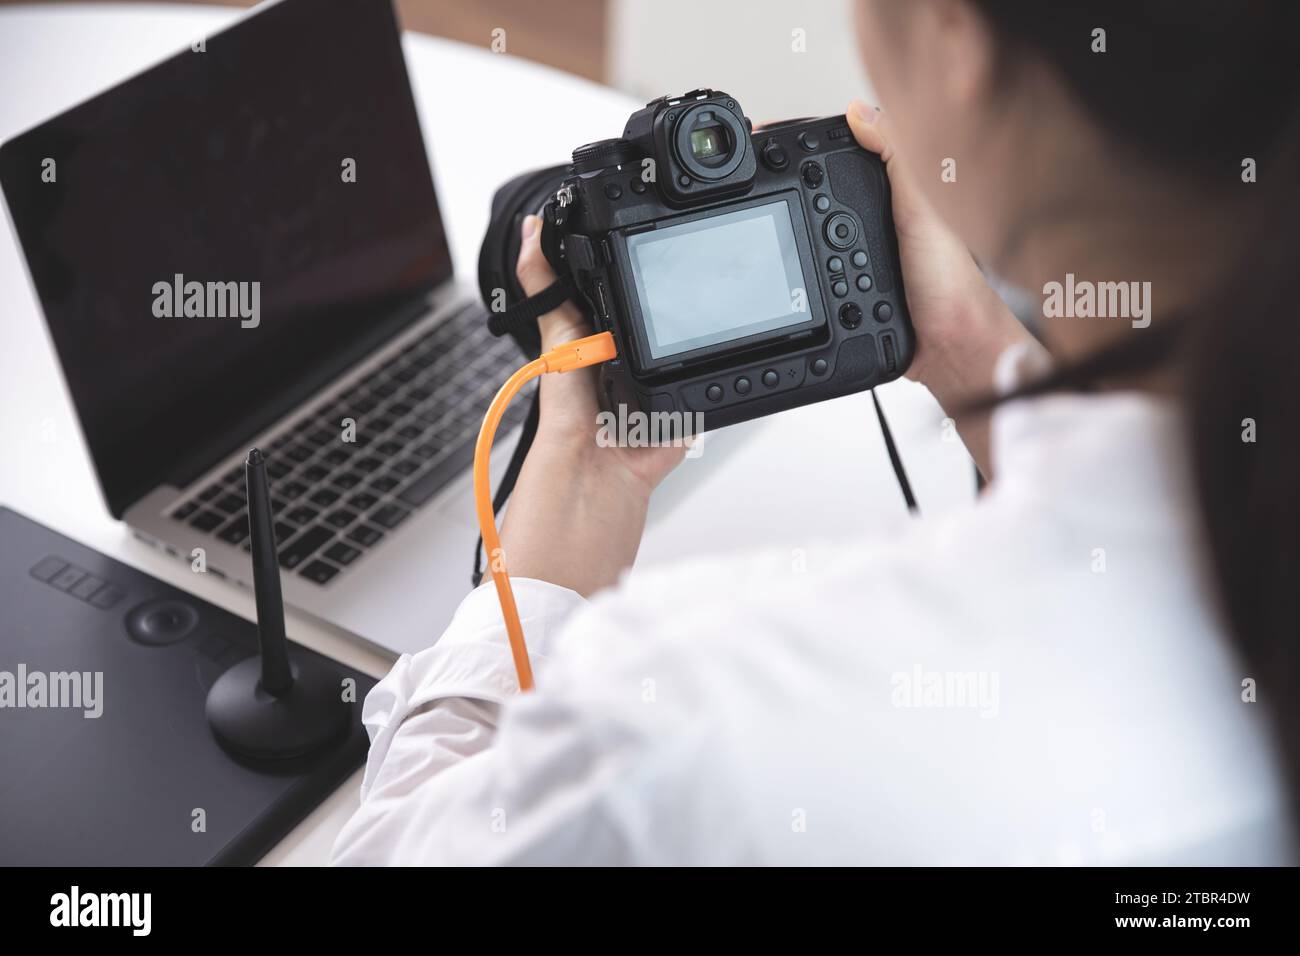 Femme photographe, blogueuse examinant des photos prises avec son appareil photo à l'aide d'un ordinateur portable Banque D'Images